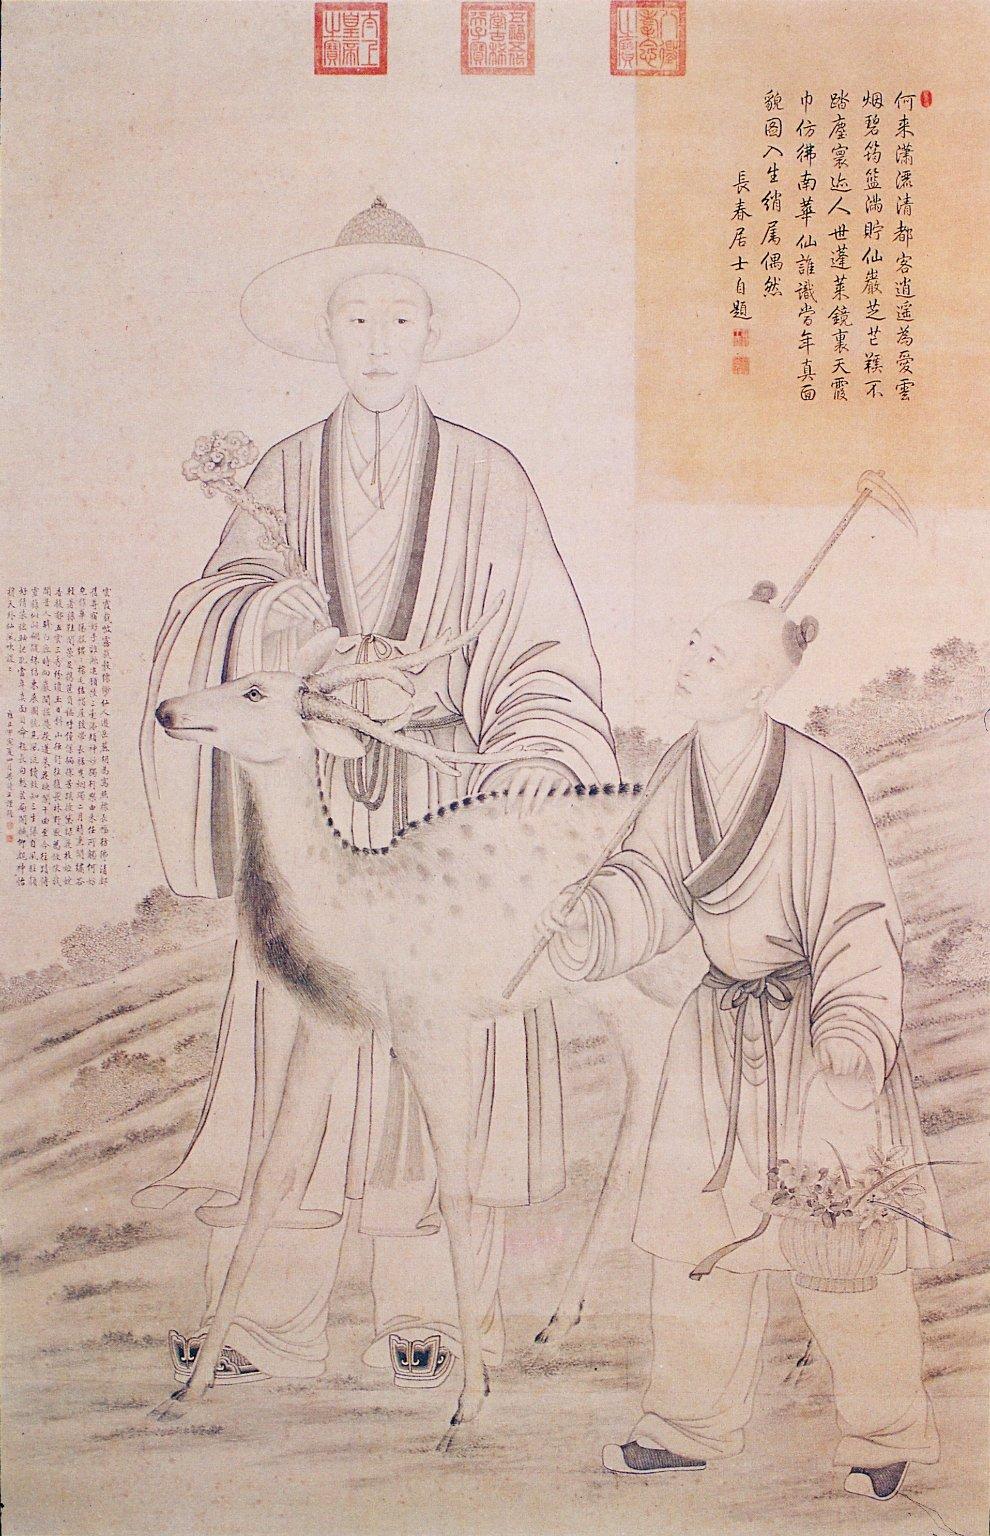 Qianlong Emperor - Wikipedia